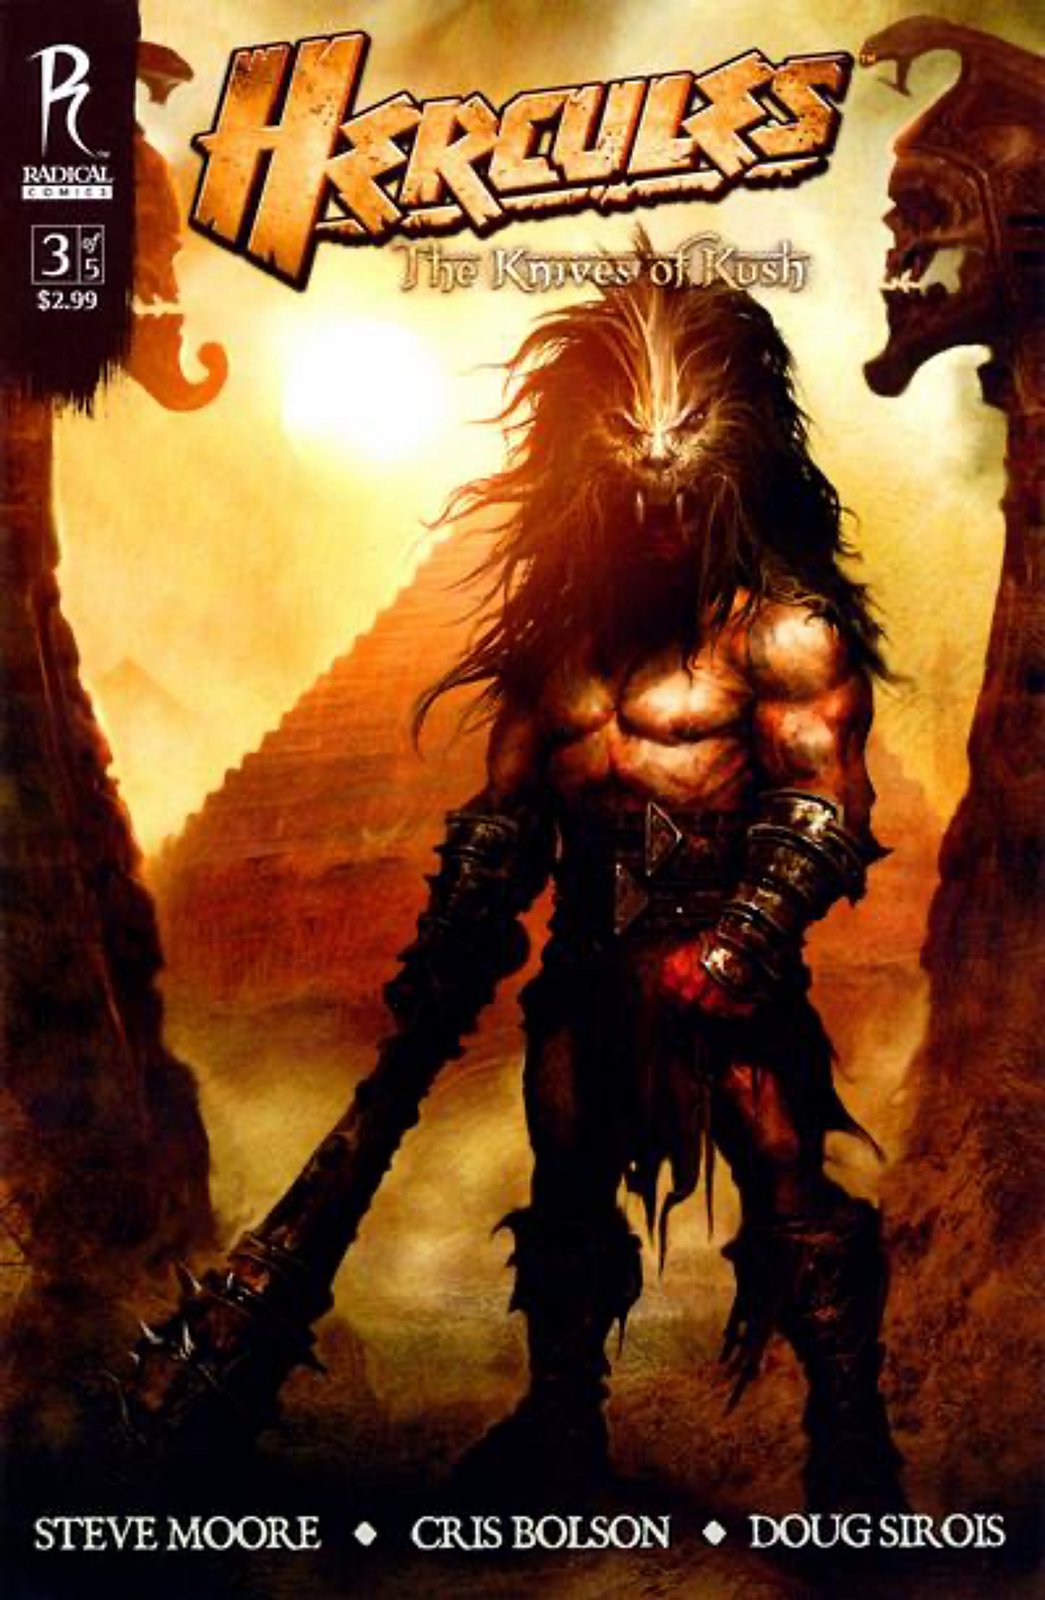 Hercules: The Knives of Kush #3A (2009) Radical Comics